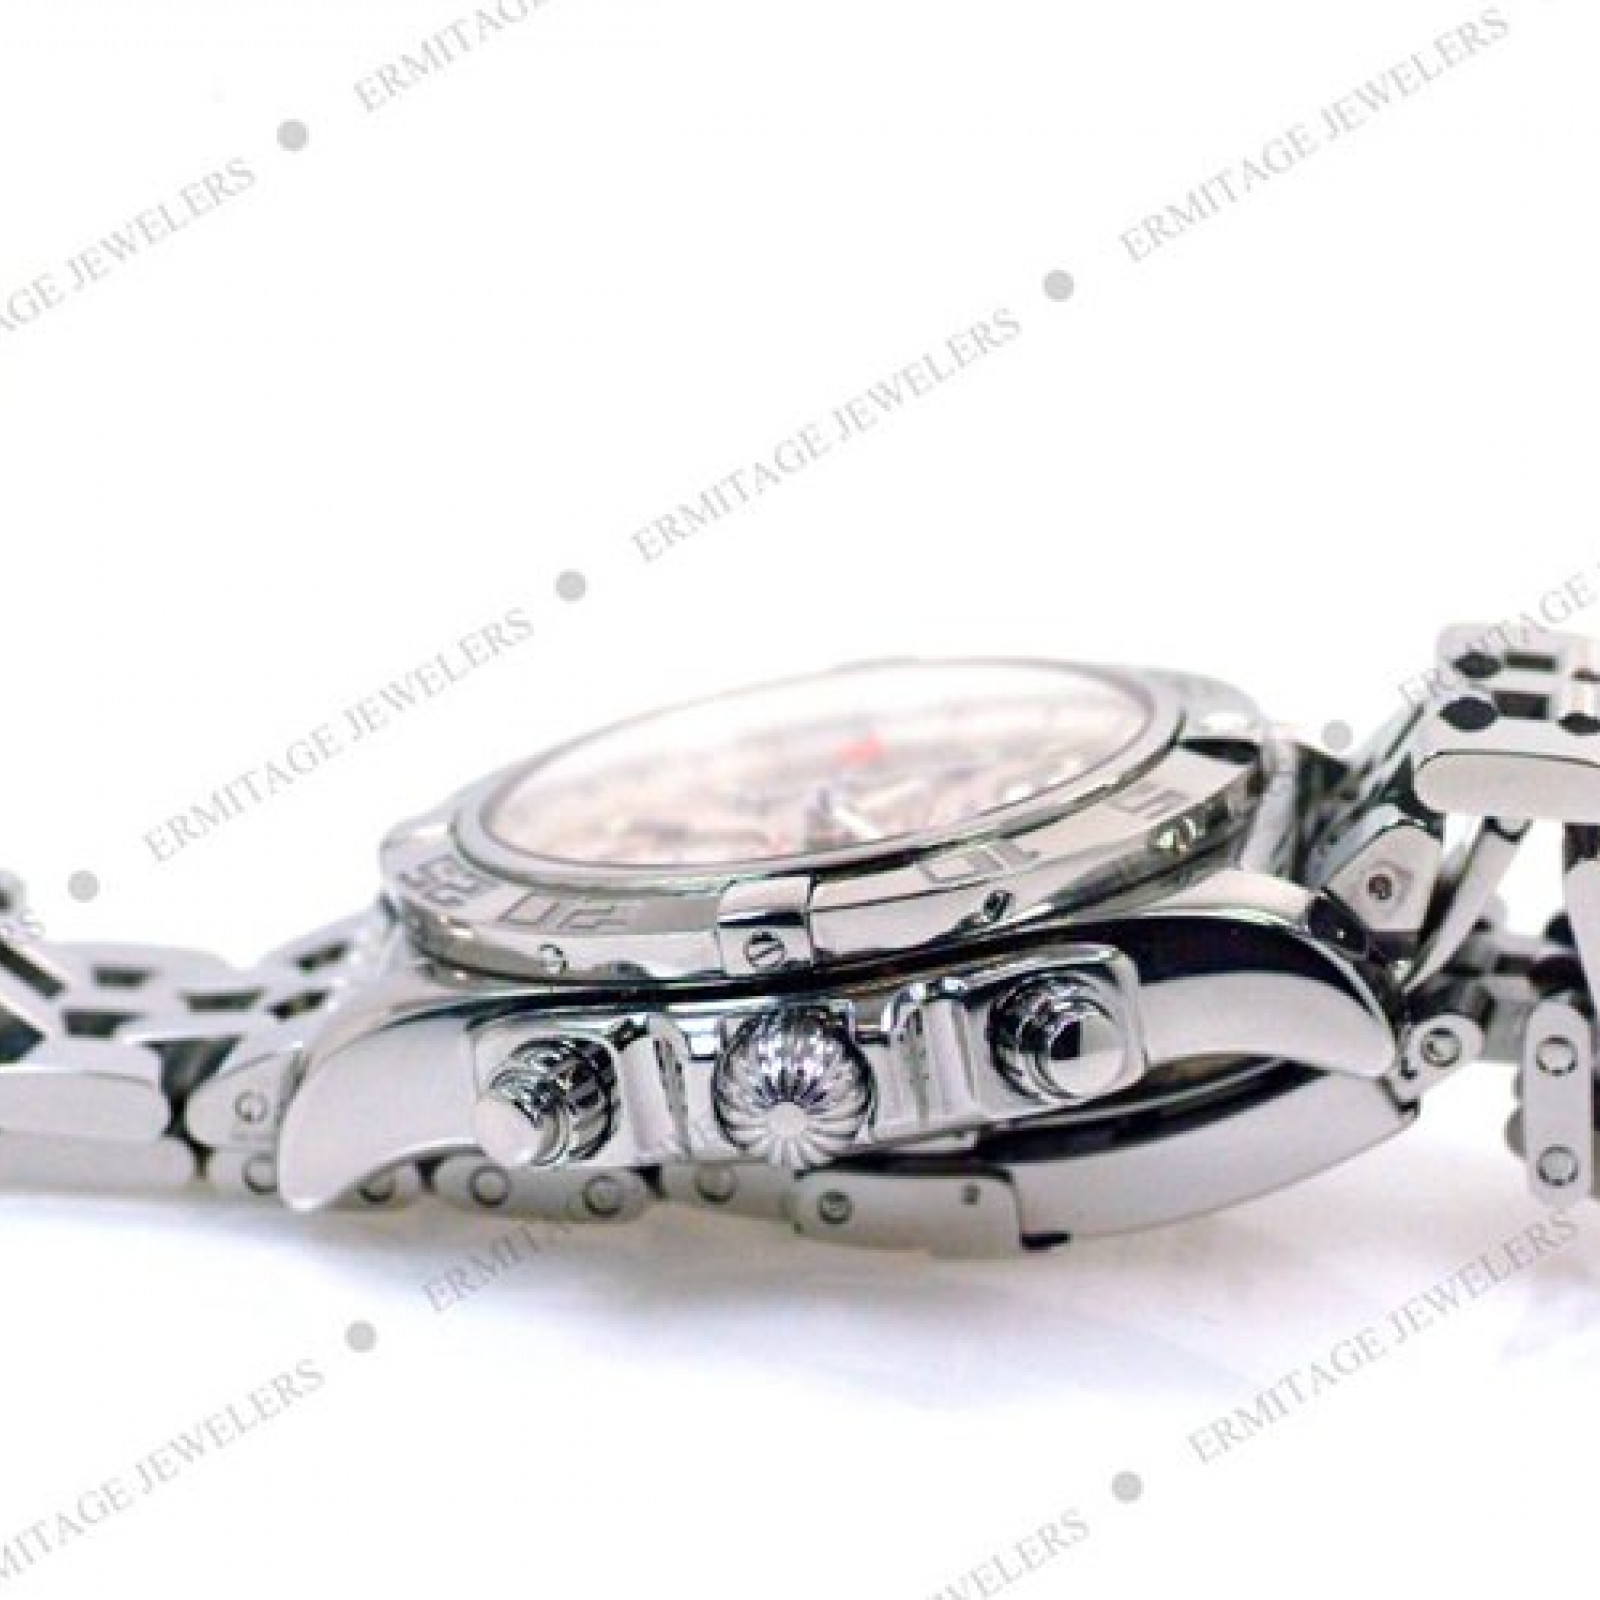 Breitling Chronomat GMT AB0410 Steel